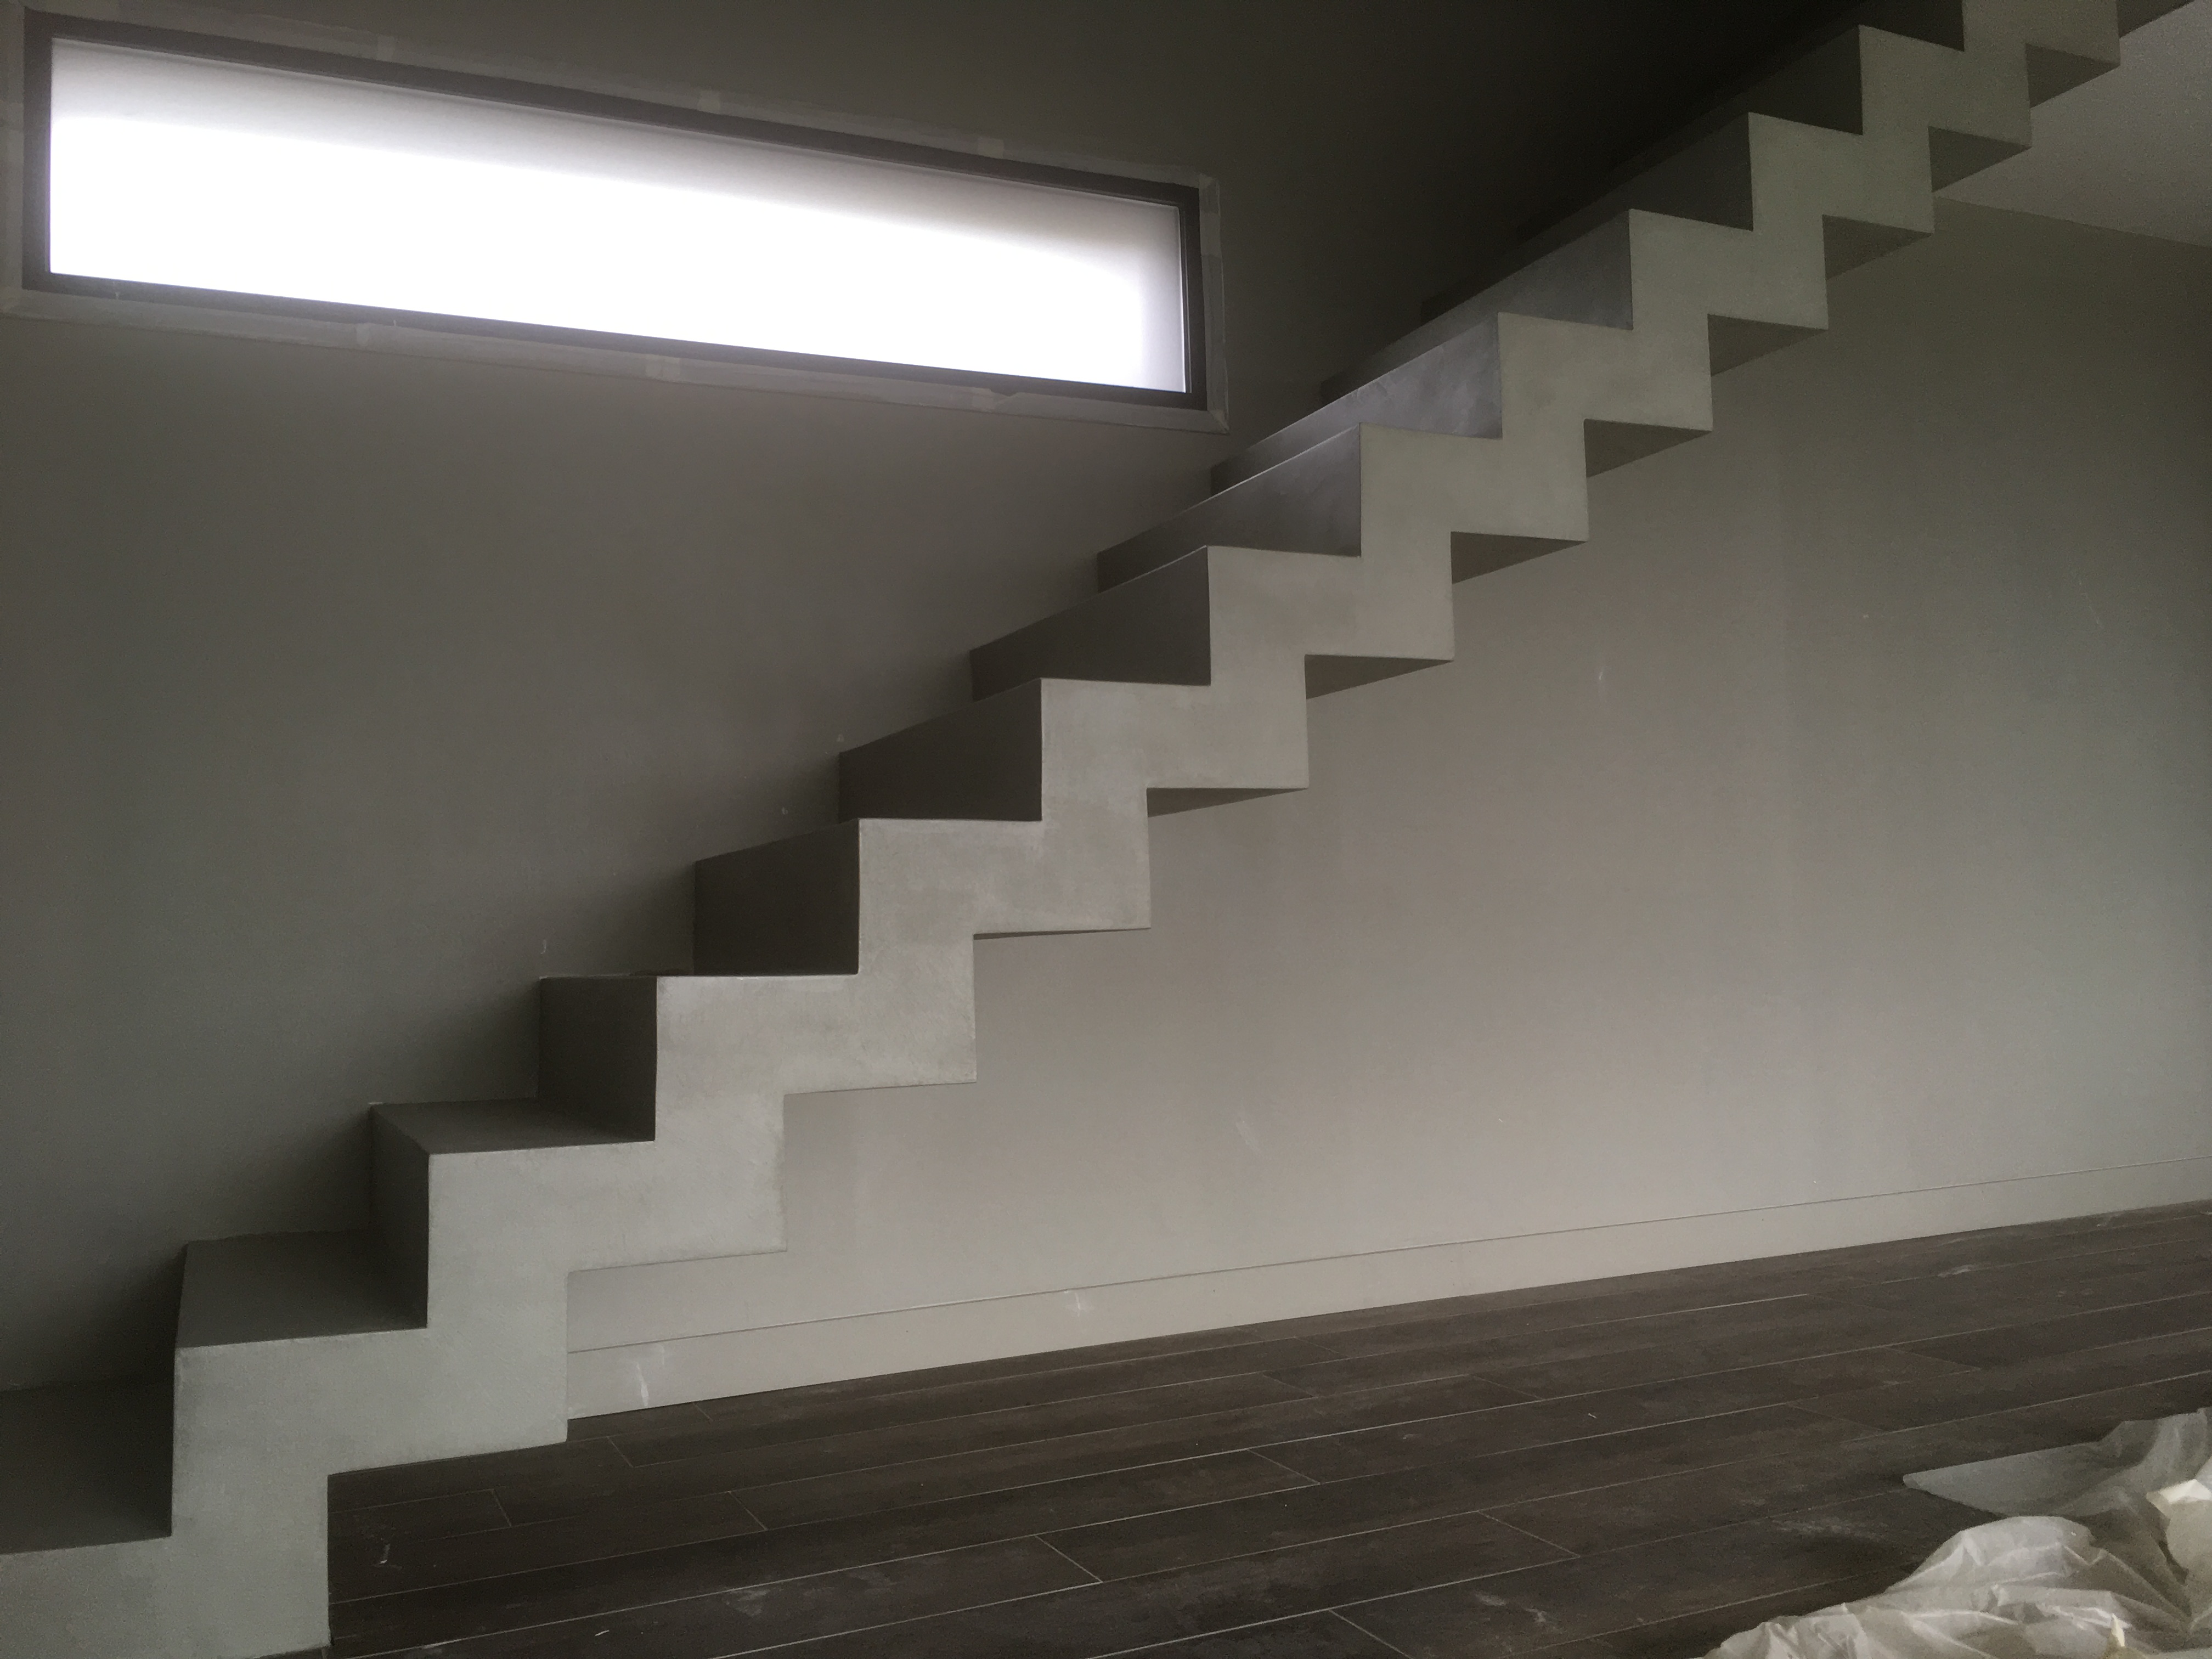 magnifique escalier crémaillère droit en béton ciré vernis mat vert bourrache à serres-castet pour un architecte